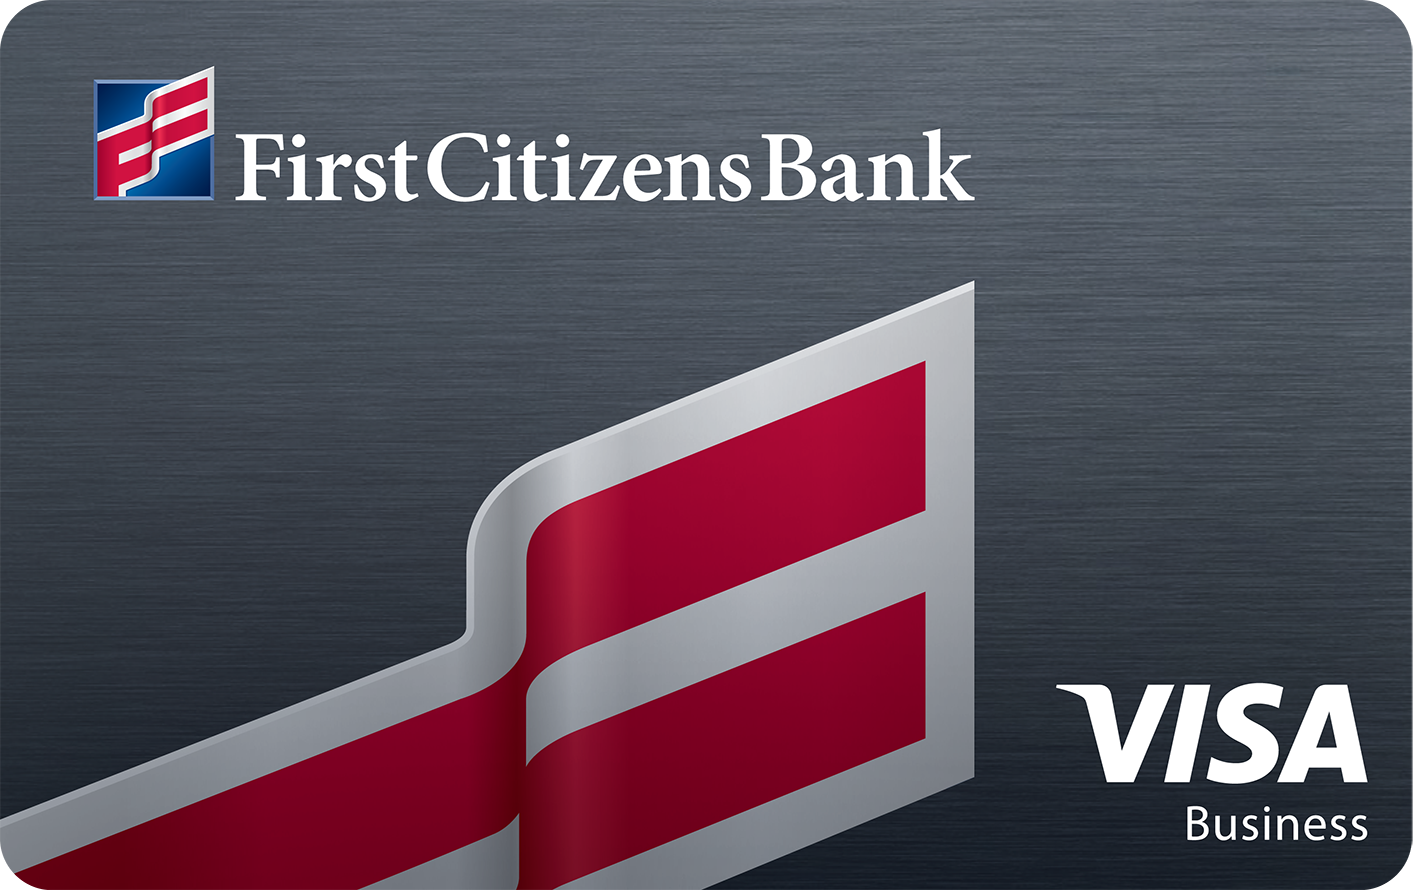 First Citizens Bank Business Visa card